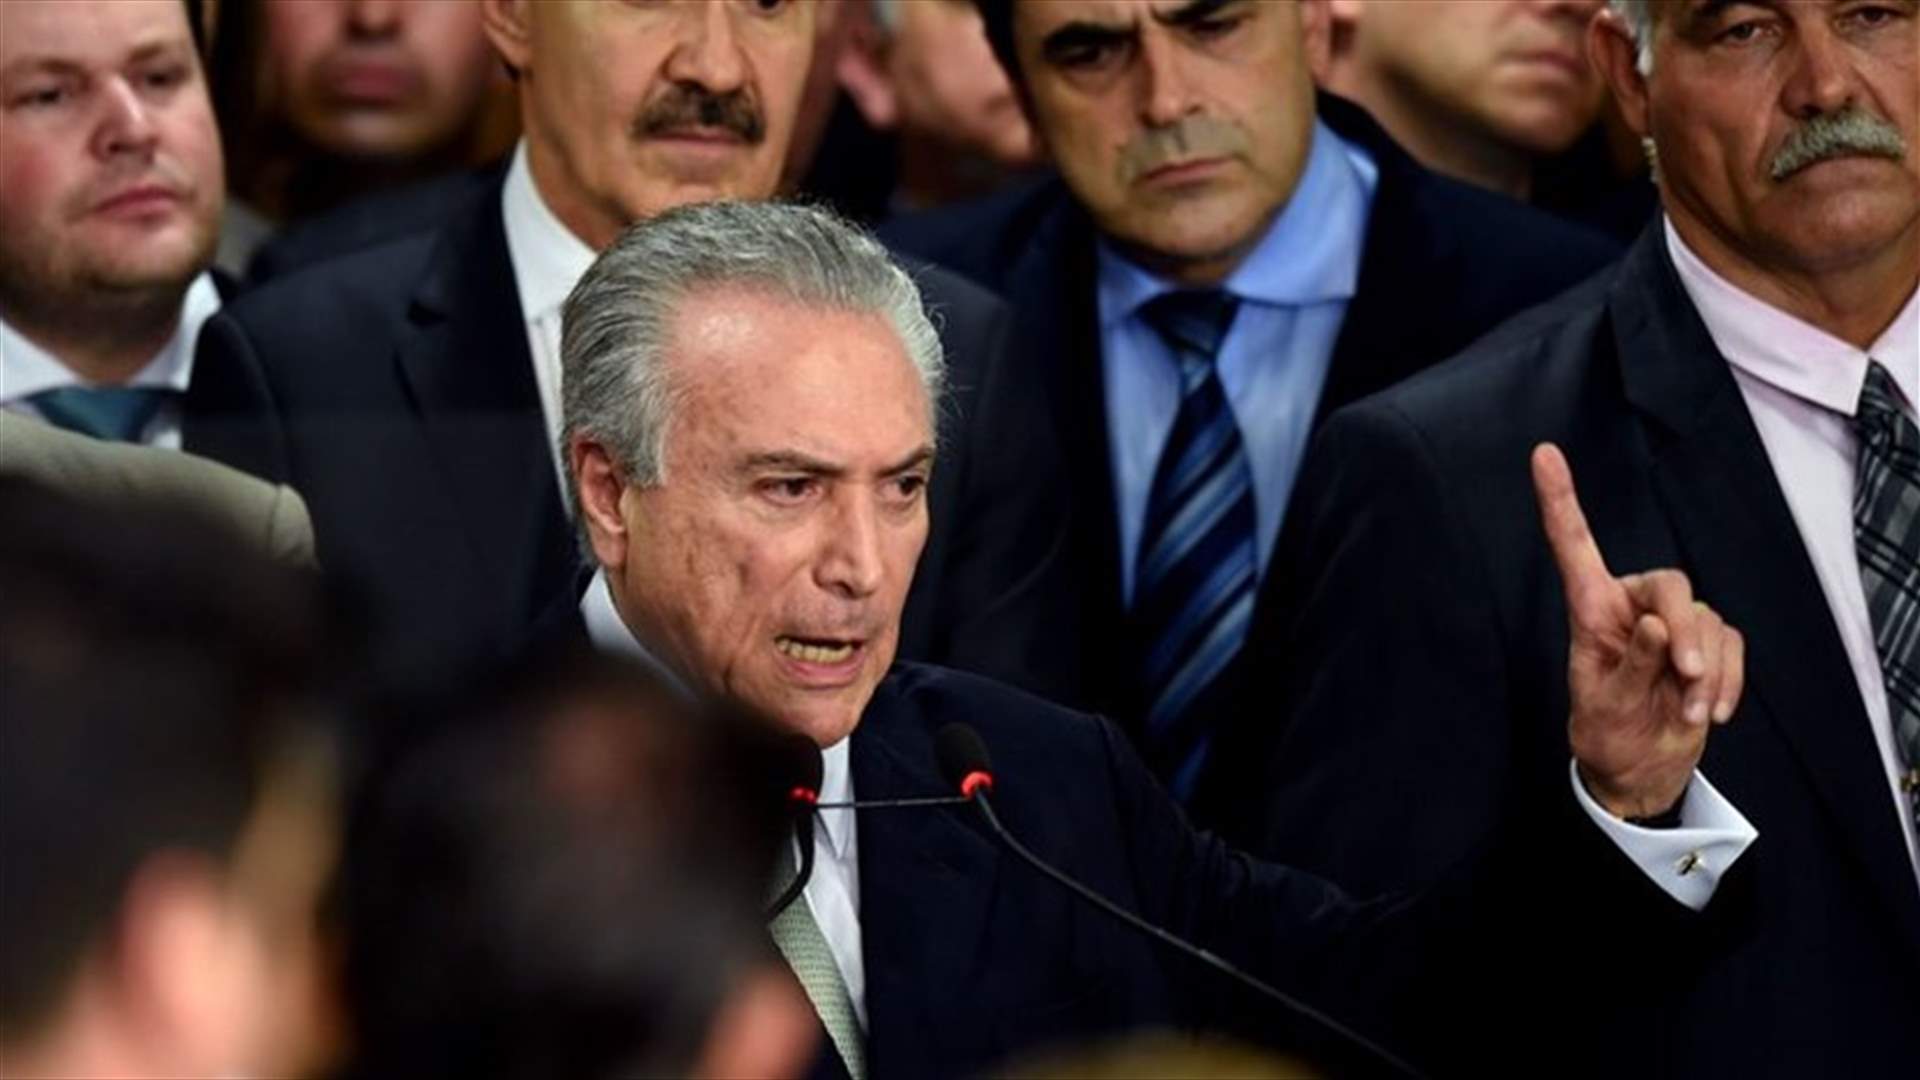 بالأرقام: الرئيس البرازيلي من أصل لبناني غير محبوب 